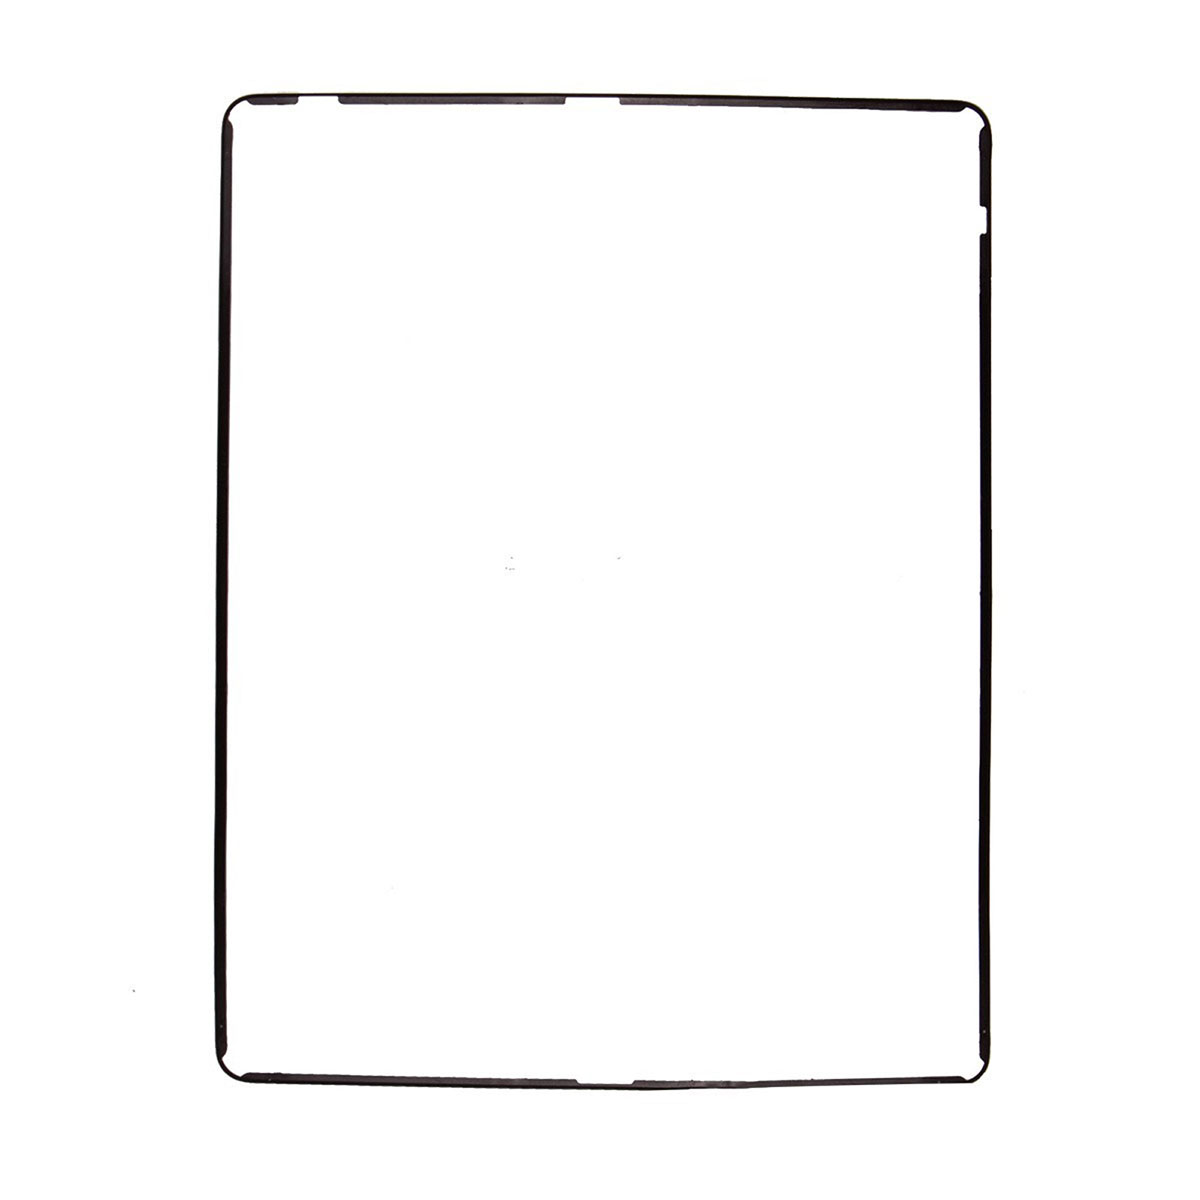 Рамка тачскрина для APPLE iPad 2, цвет черный.